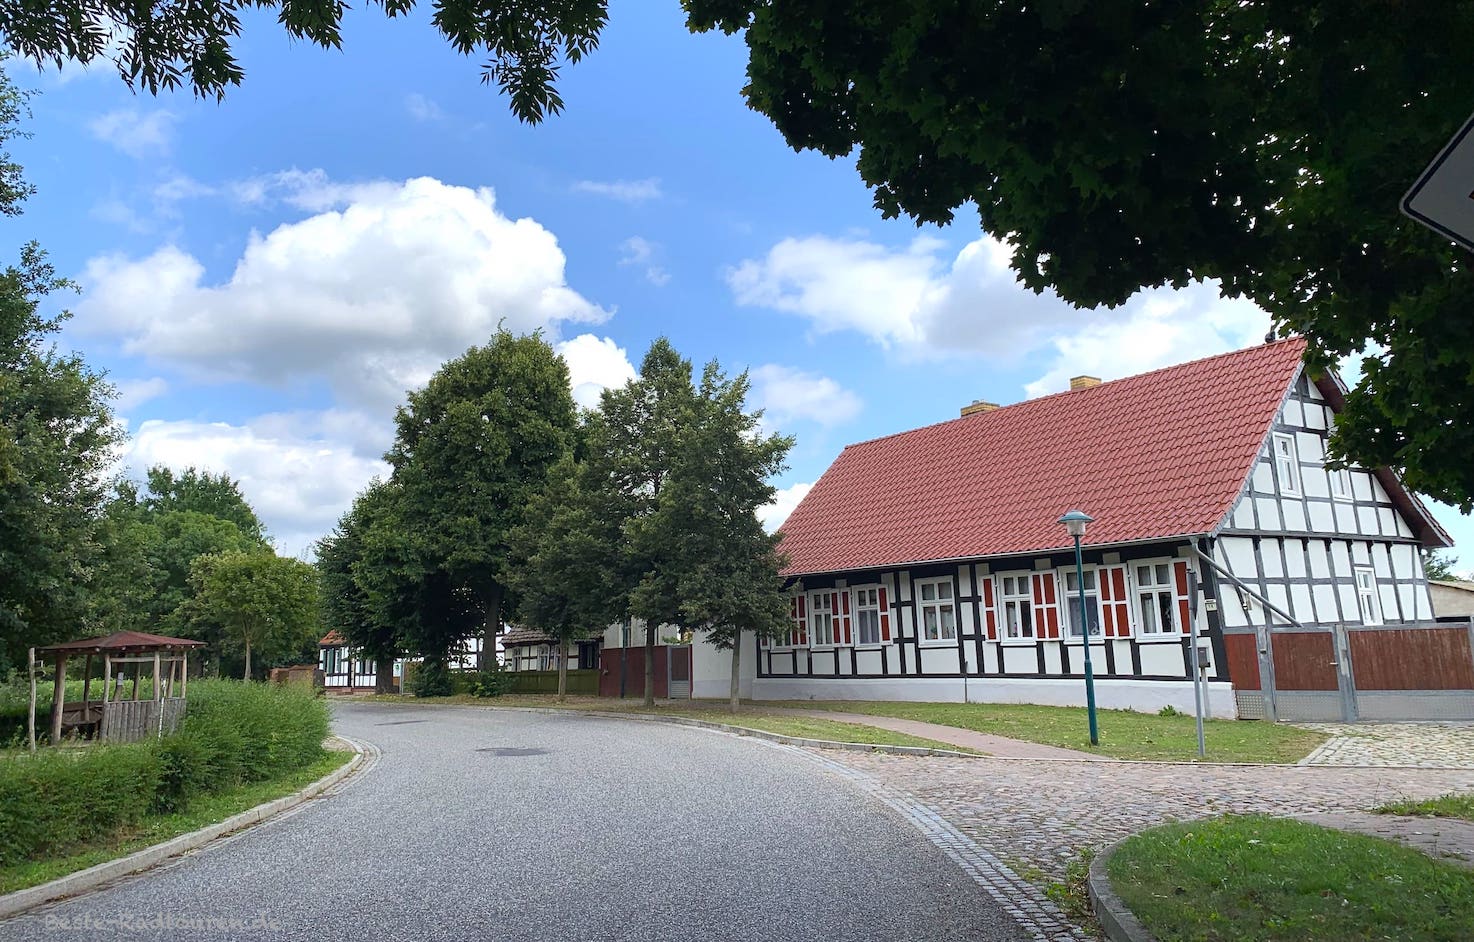 Neulewin im Oderbruch: Ort mit restaurierten Fachwerkhäusern